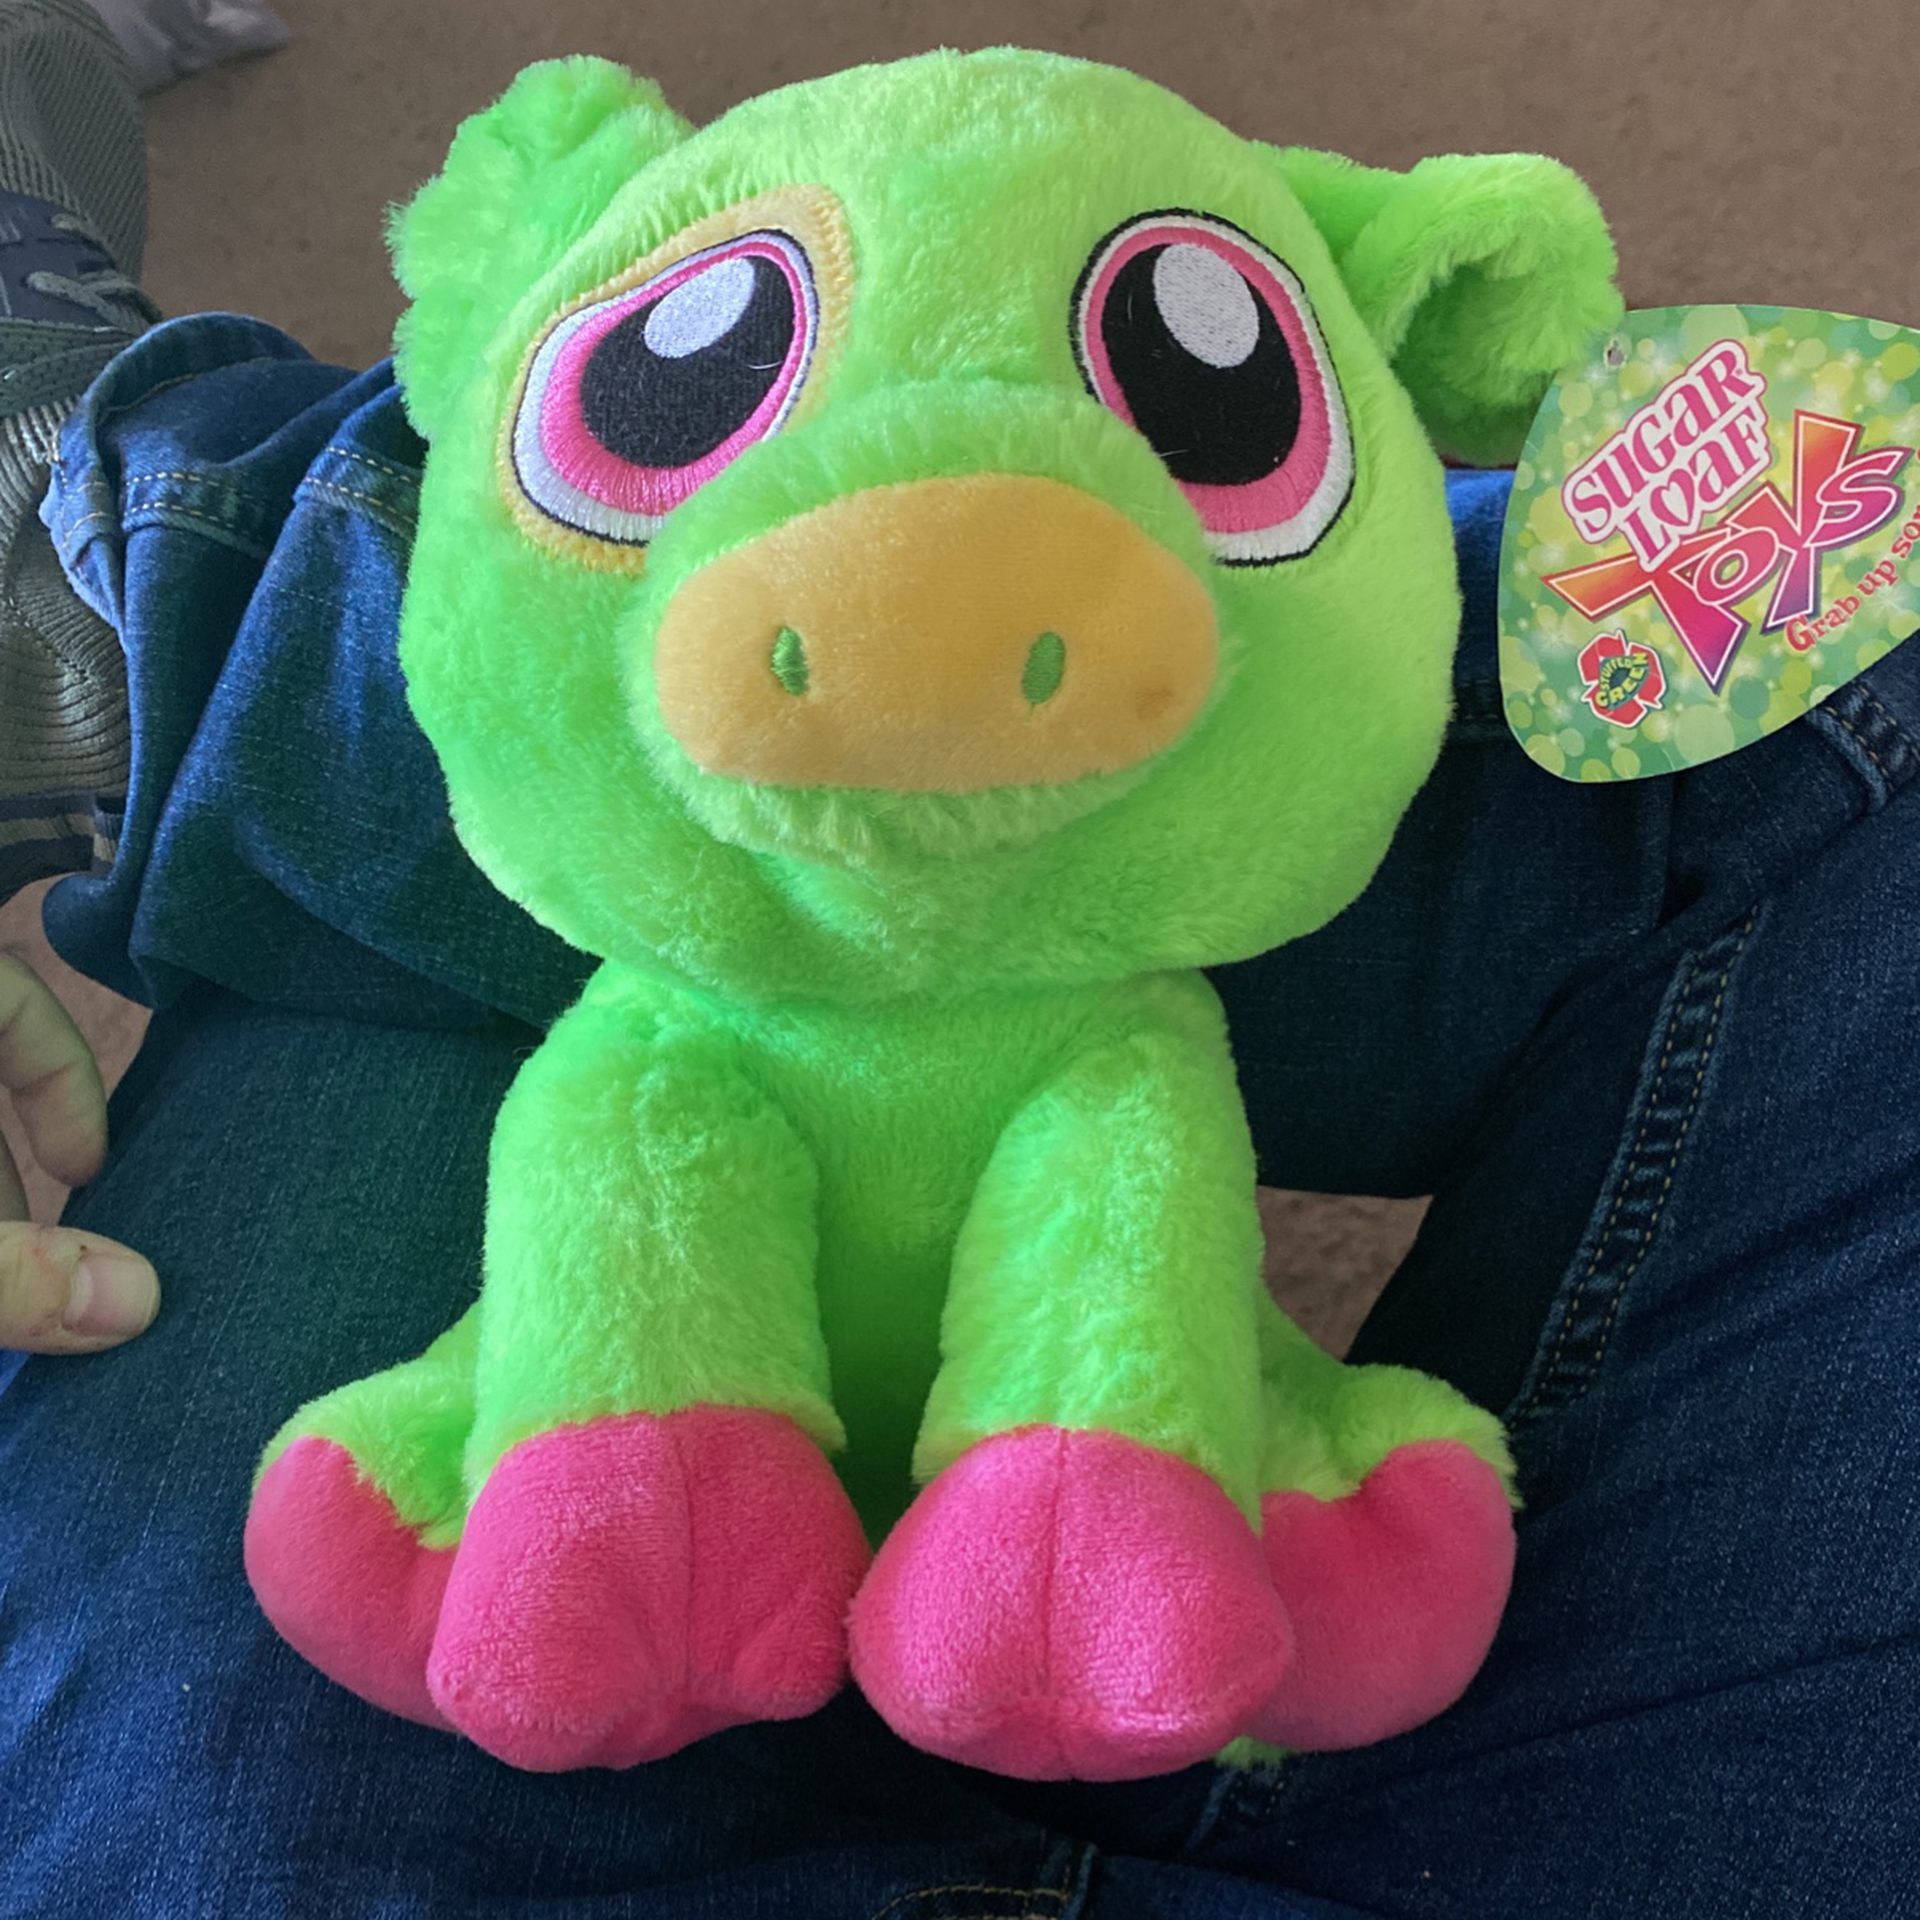 Sugar Loaf Toys Stuffed Green Pig